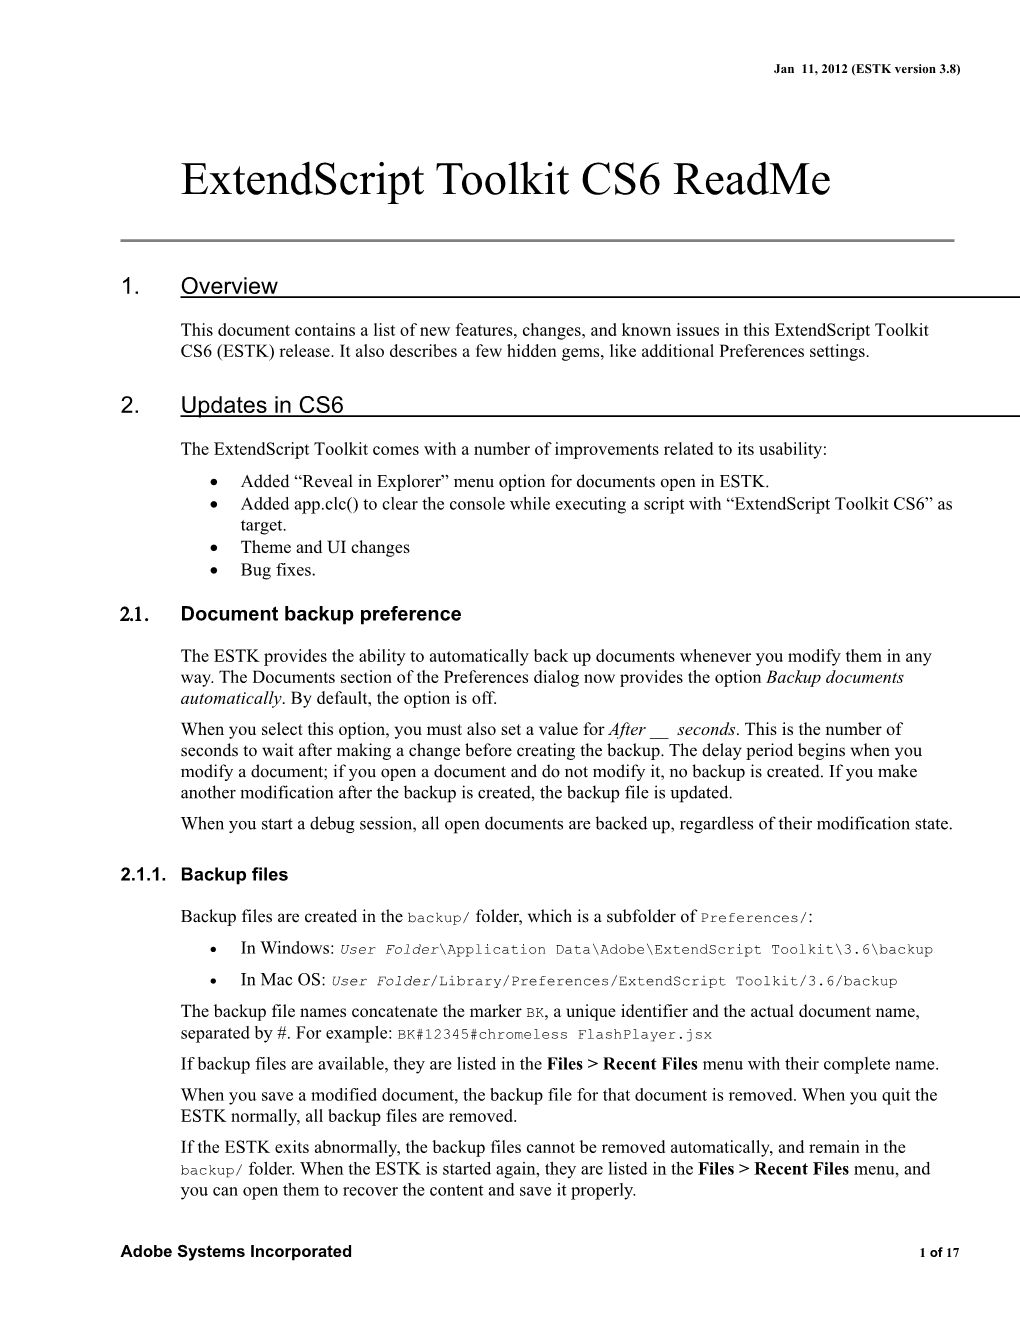 Extendscript Toolkit CS6 Readme